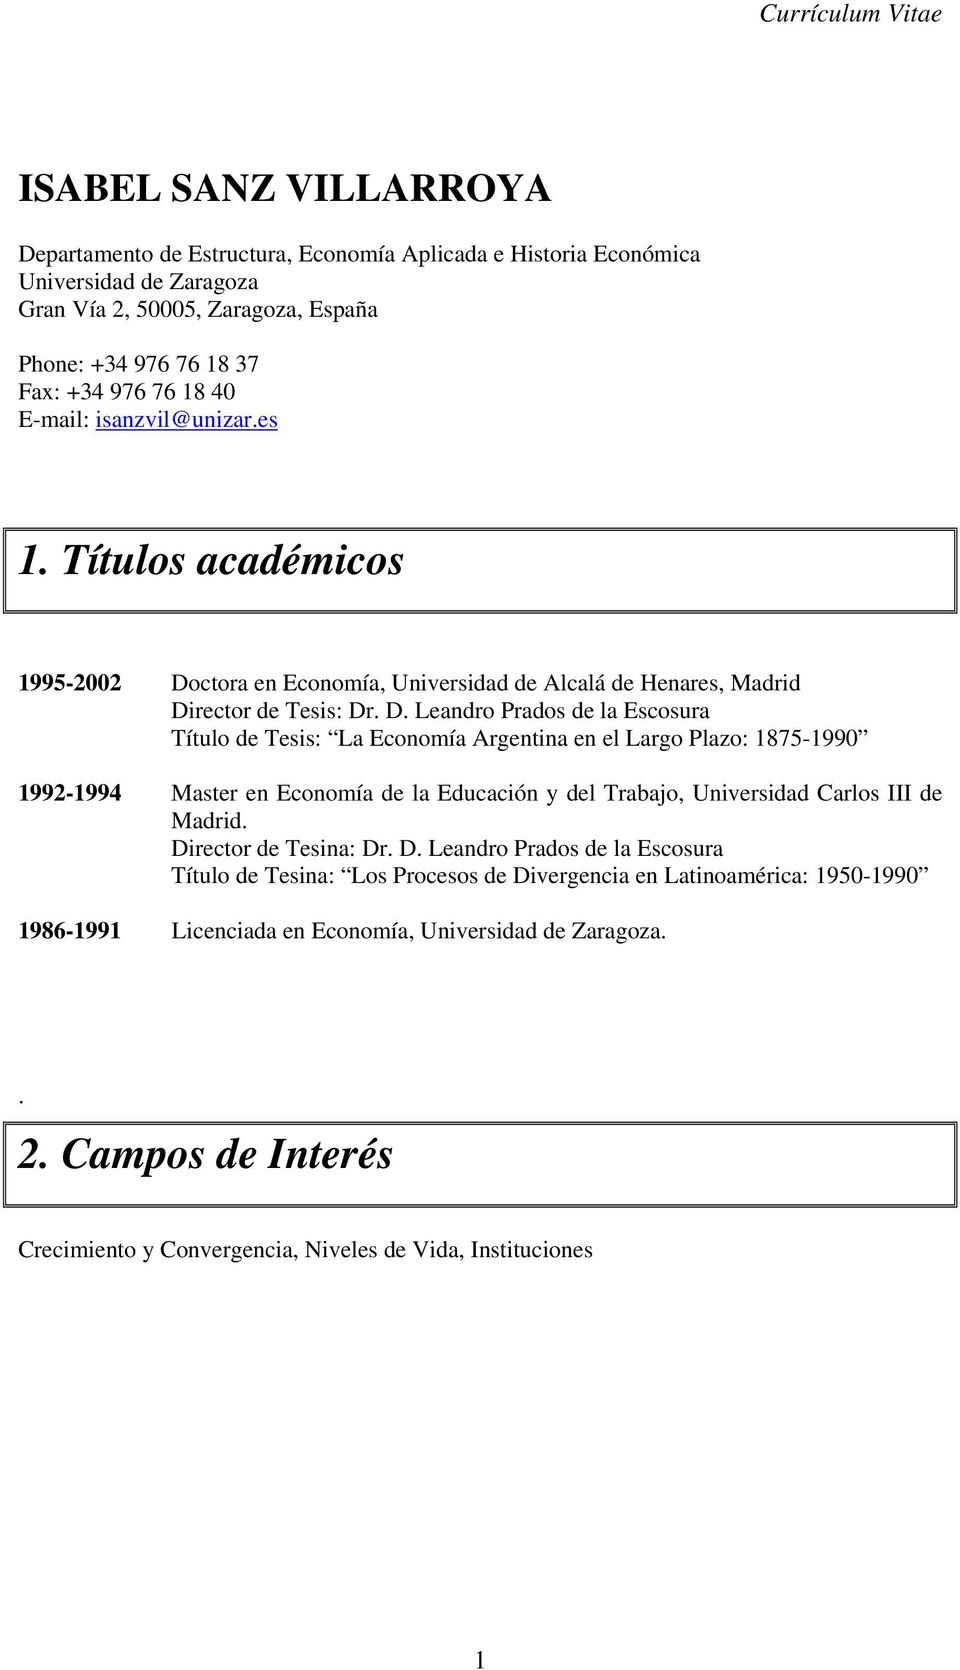 ctora en Economía, Universidad de Alcalá de Henares, Madrid Di